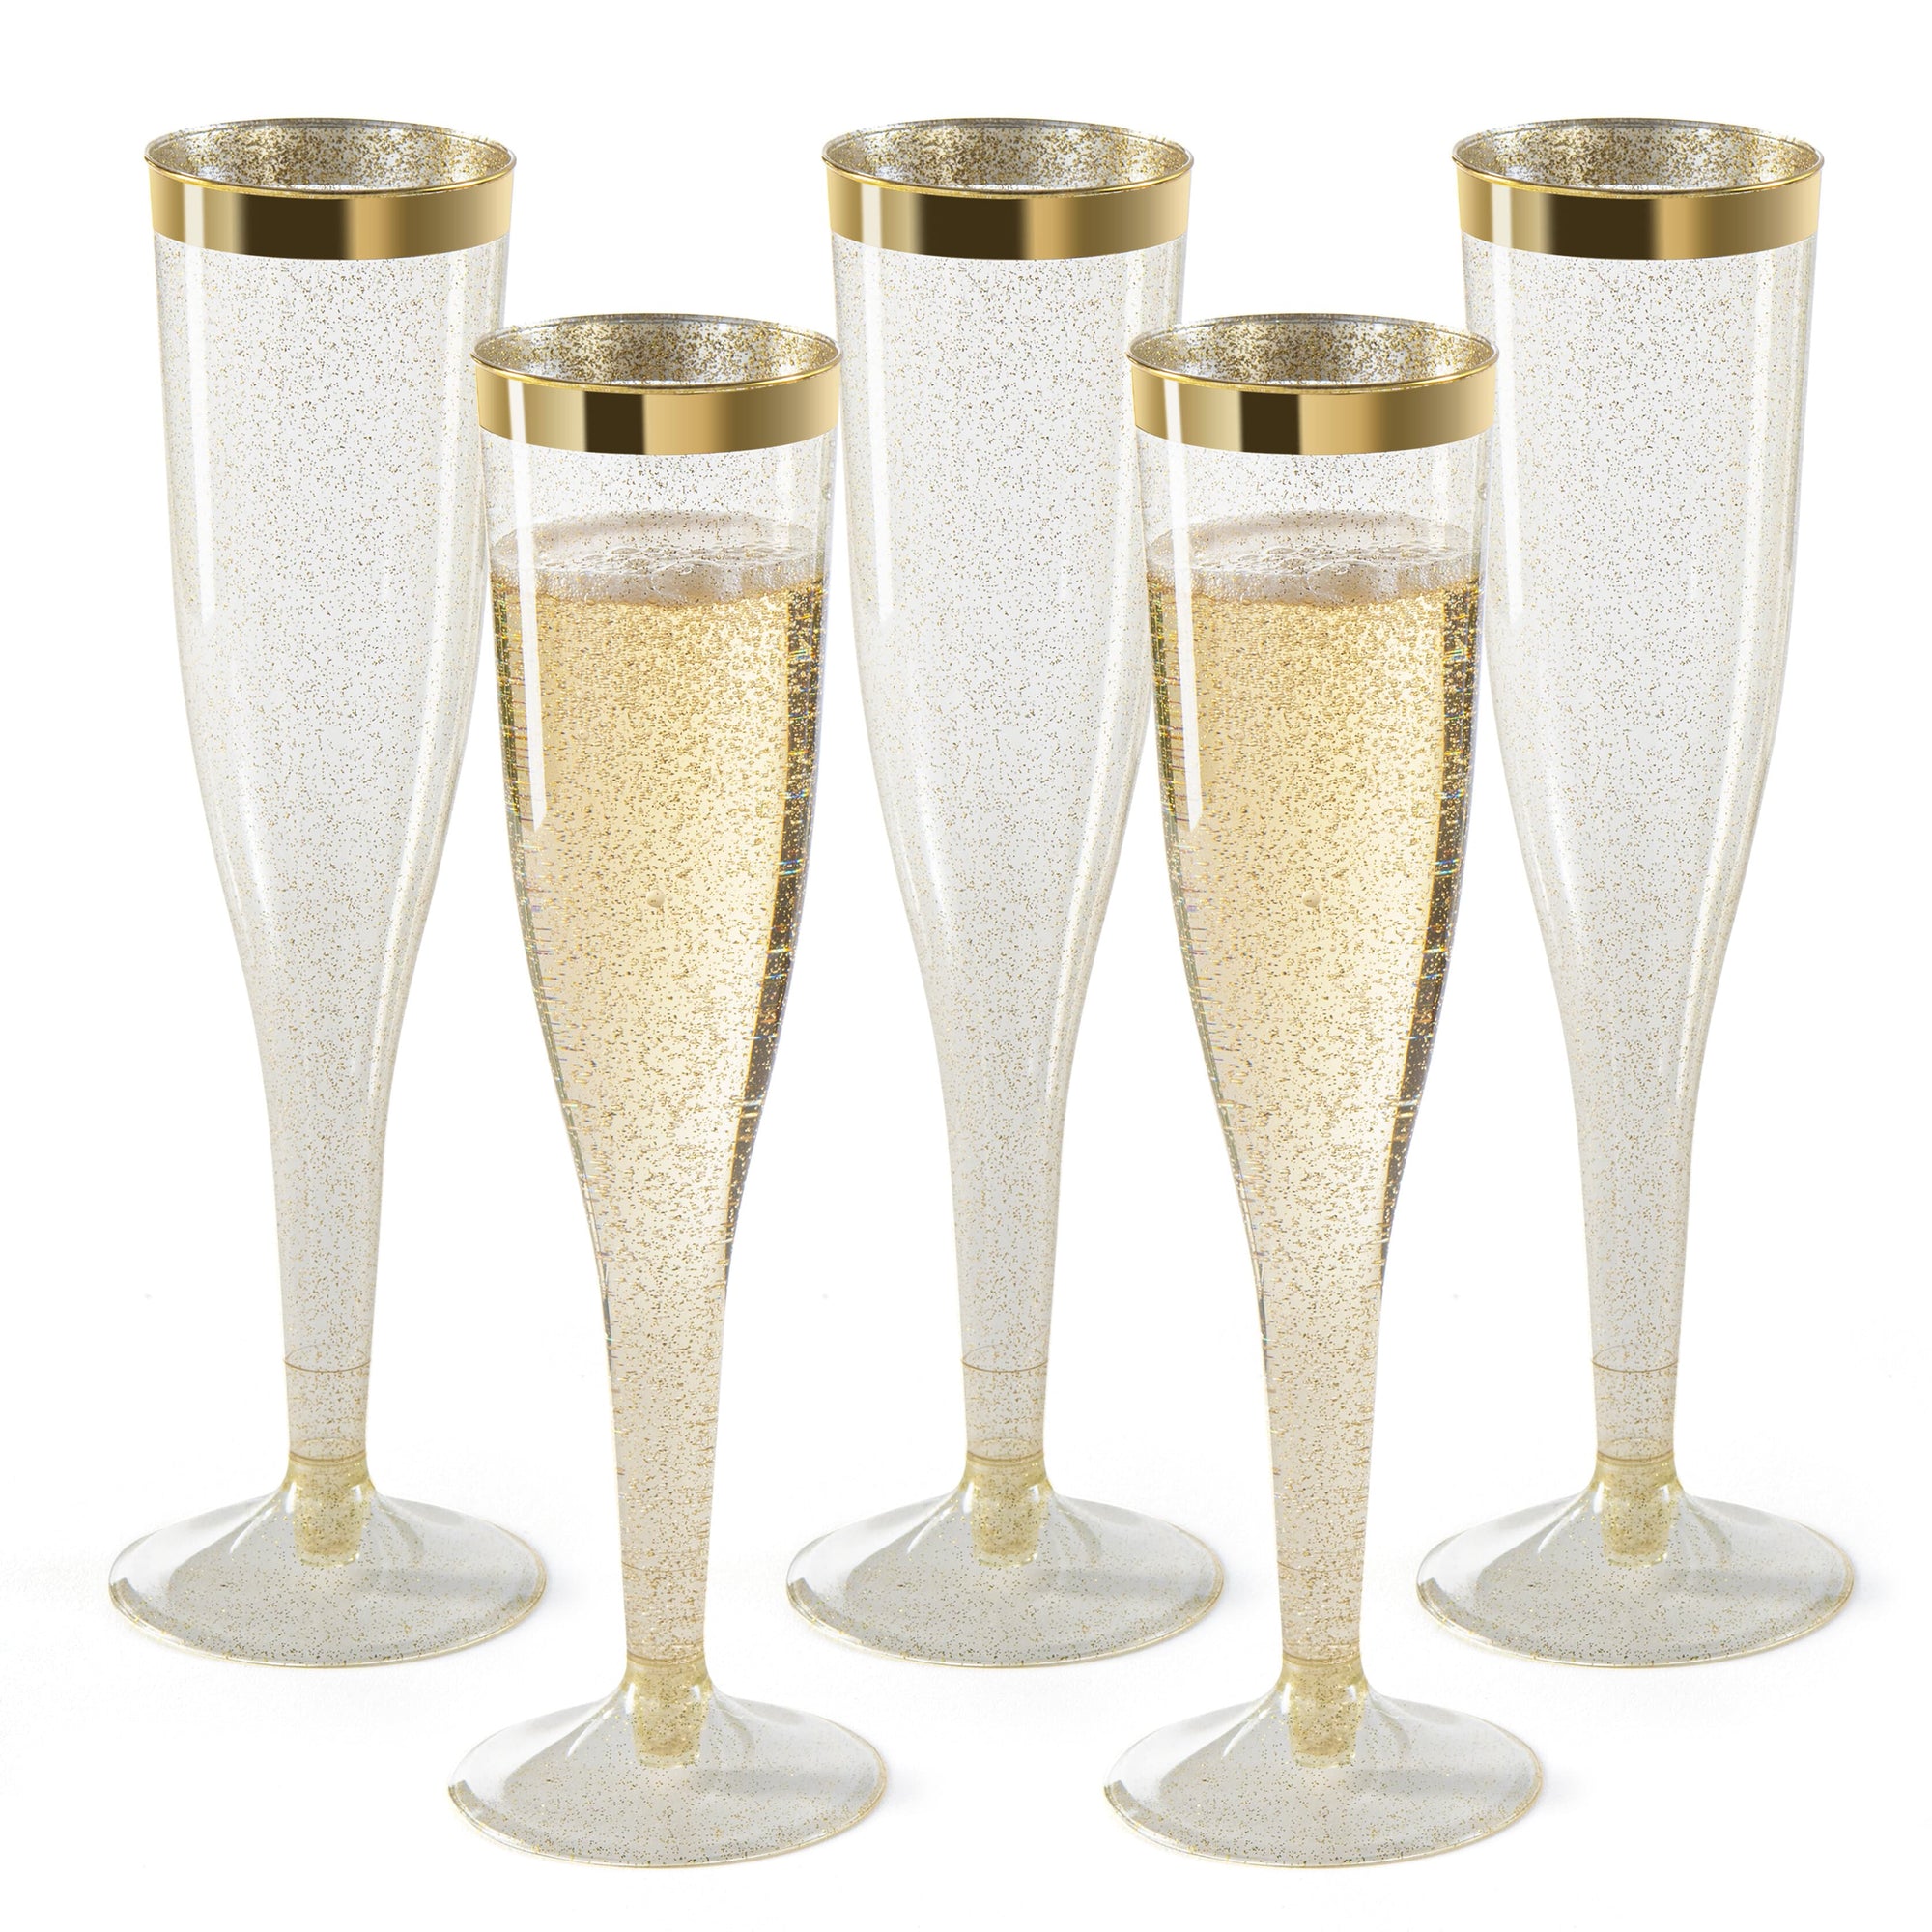 Plastic Champagne Flutes & Glasses